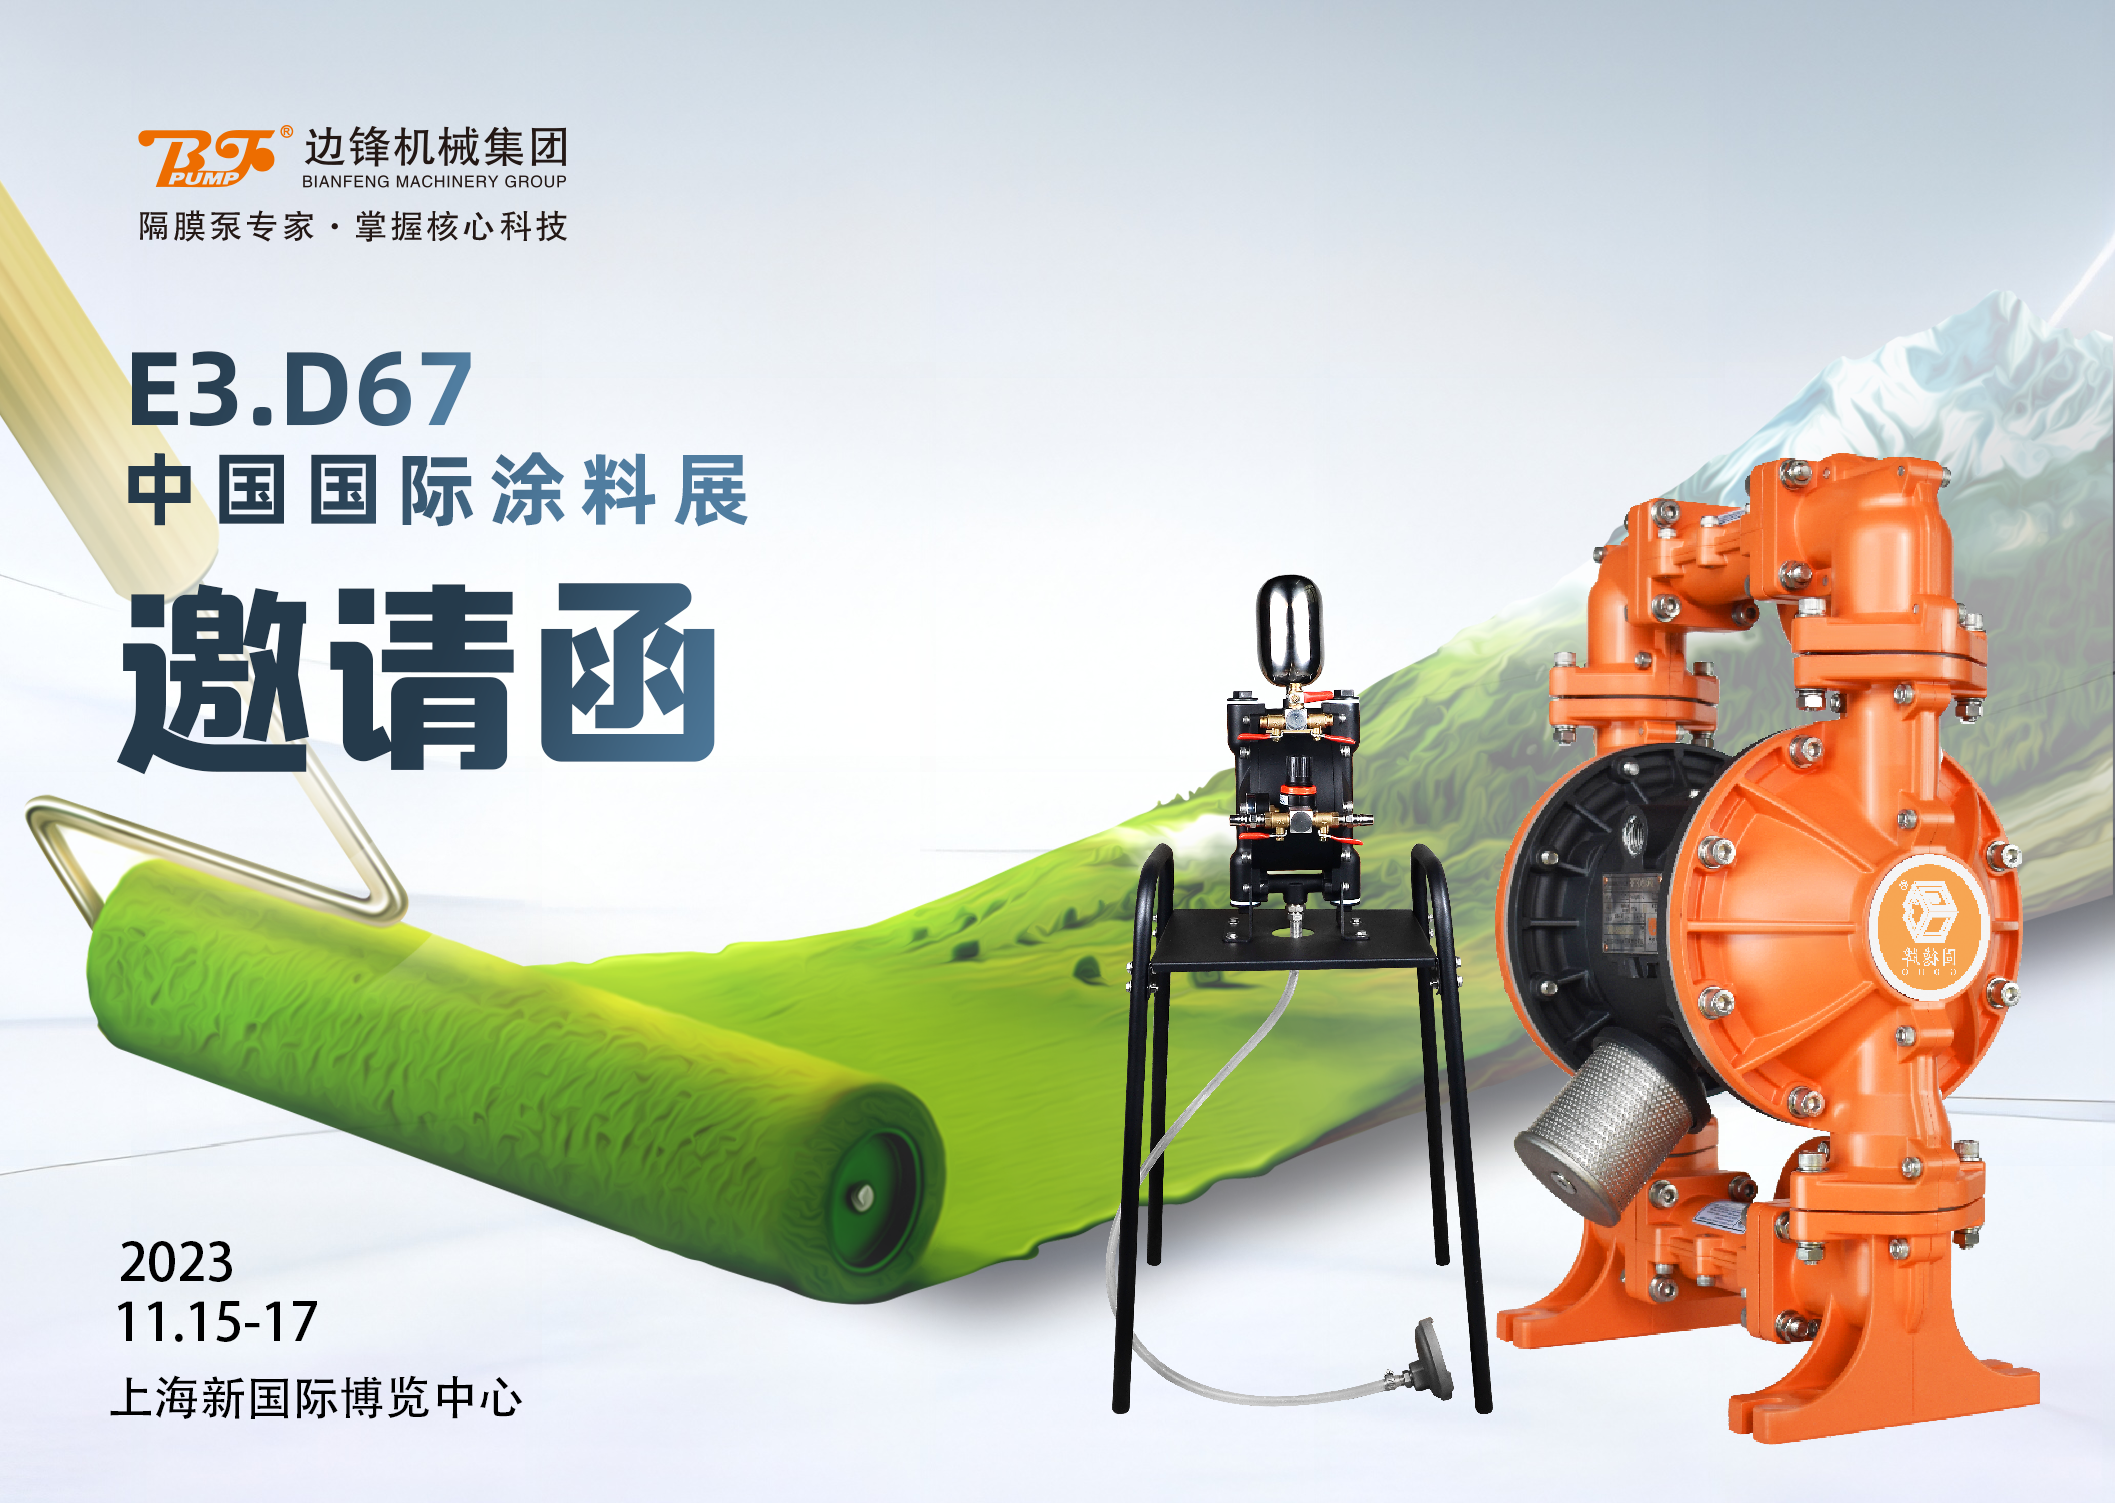 平博pinnacle机械集团,固德牌,隔膜泵厂家,中国国际涂料展